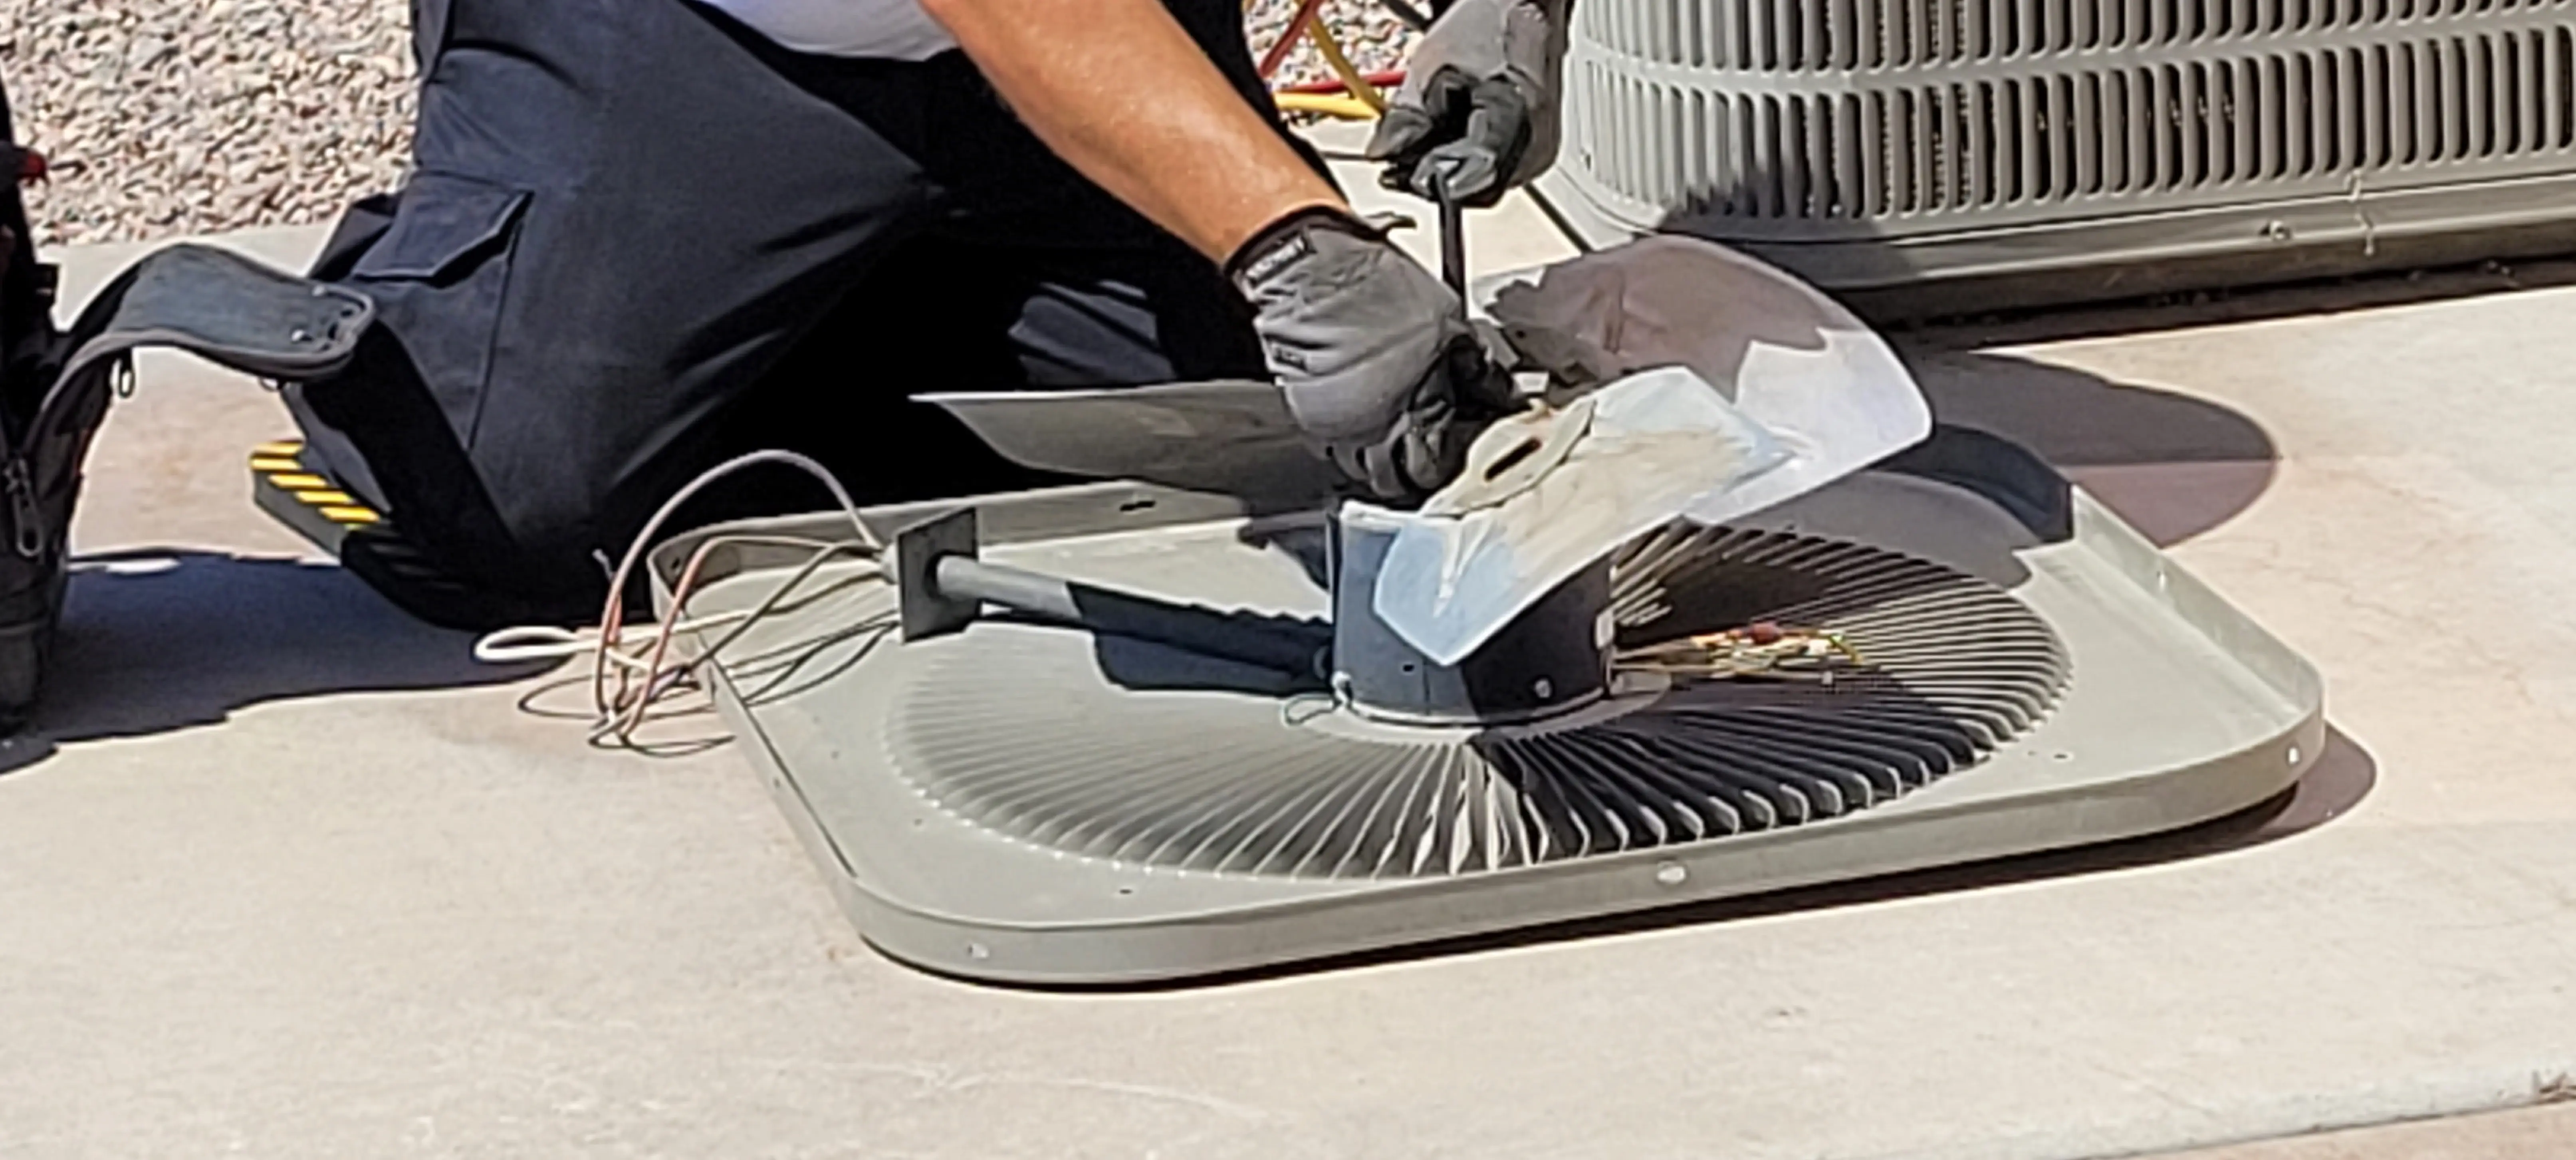 Air-Conditioning-Repair--in-Seguin-Texas-Air-Conditioning-Repair-4296816-image